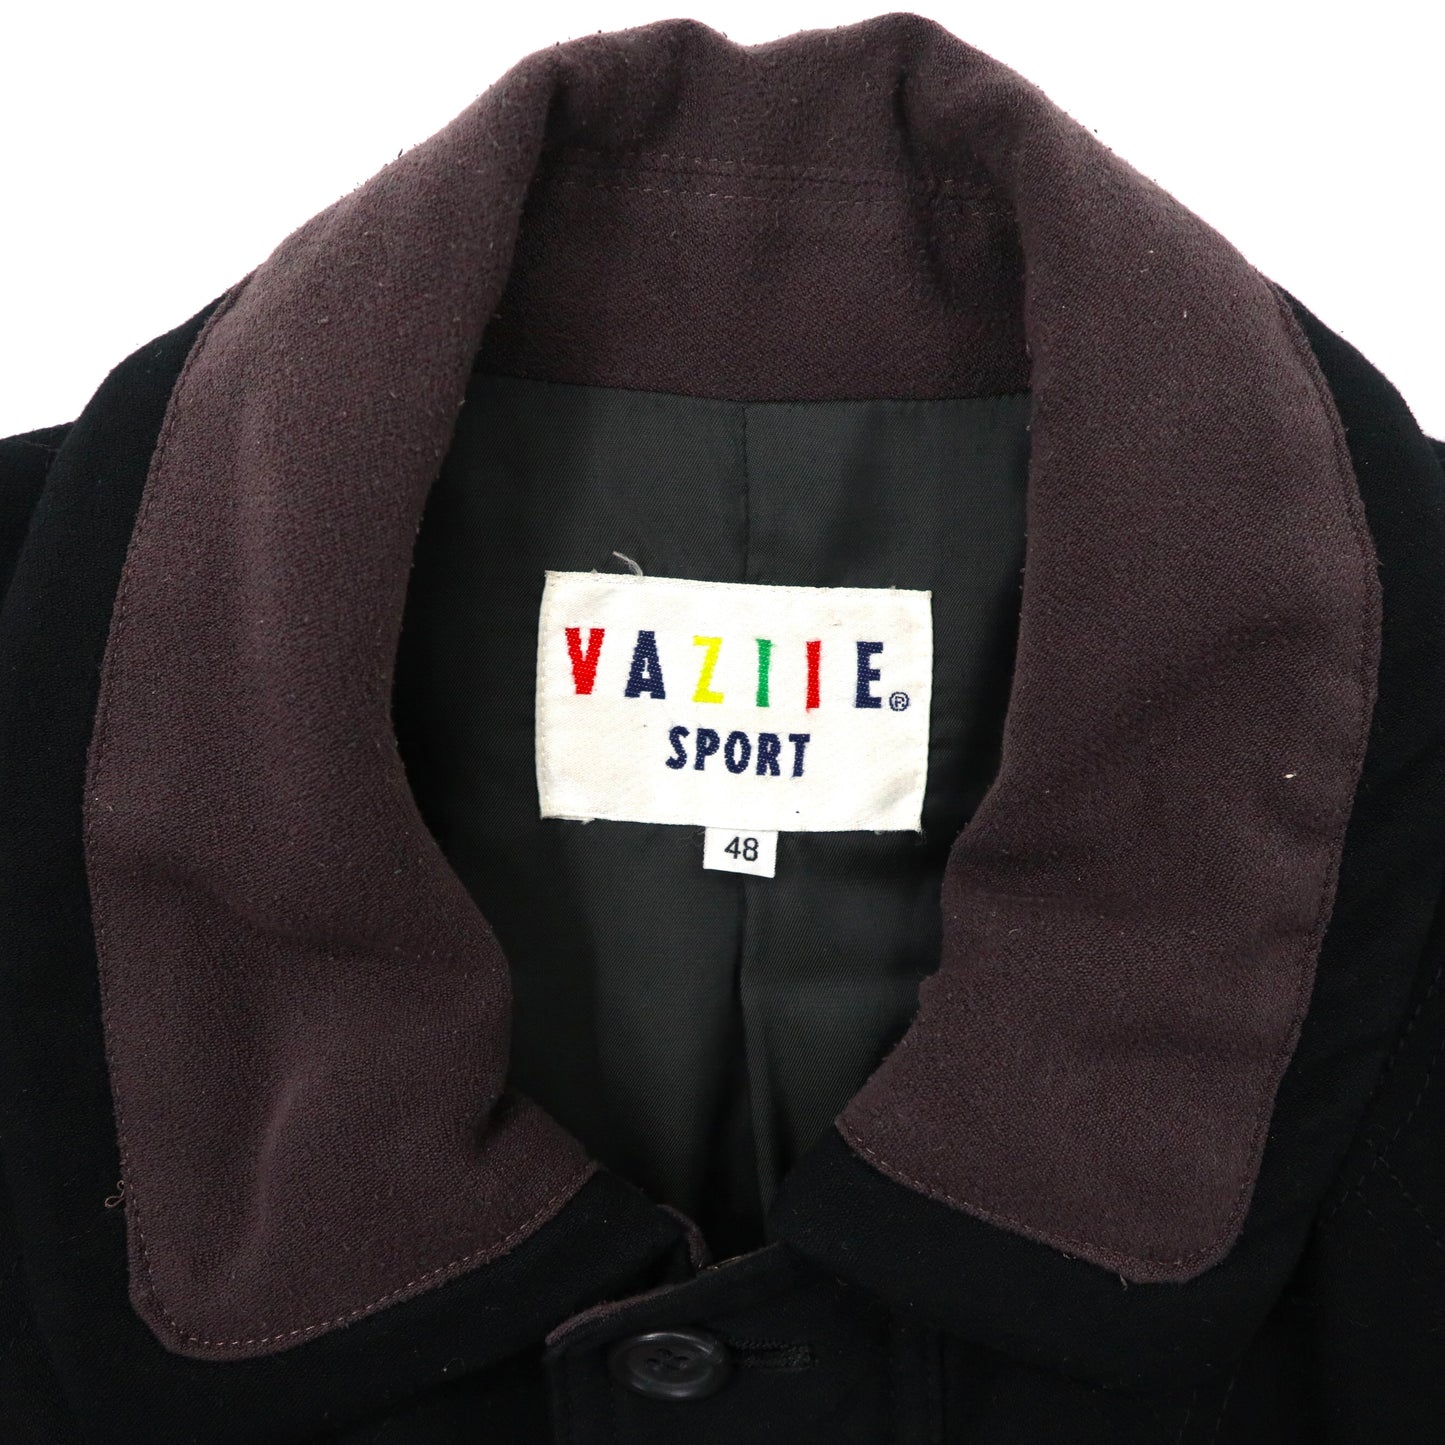 VAZIIE SPORT 異素材切り替えコート 48 マルチカラー コーデュロイ キャラクター刺繍 ビッグサイズ 80年代 日本製